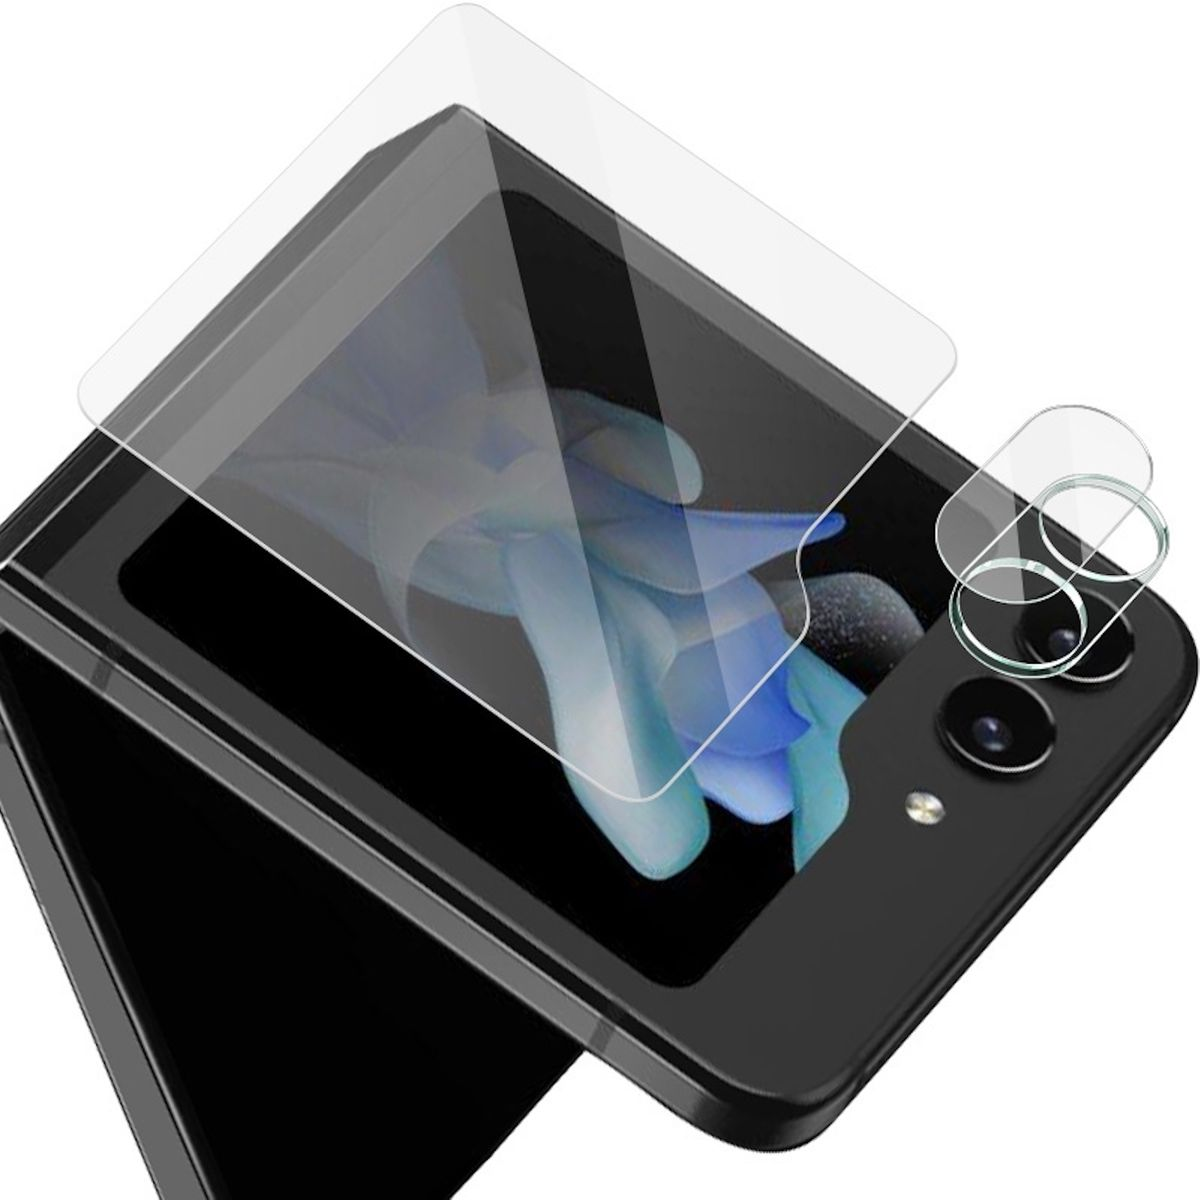 WIGENTO Komplettschutz Kamera und Galaxy Flip5 Schutzglas 5G) 1x Schutzglas(für Z Samsung Screen